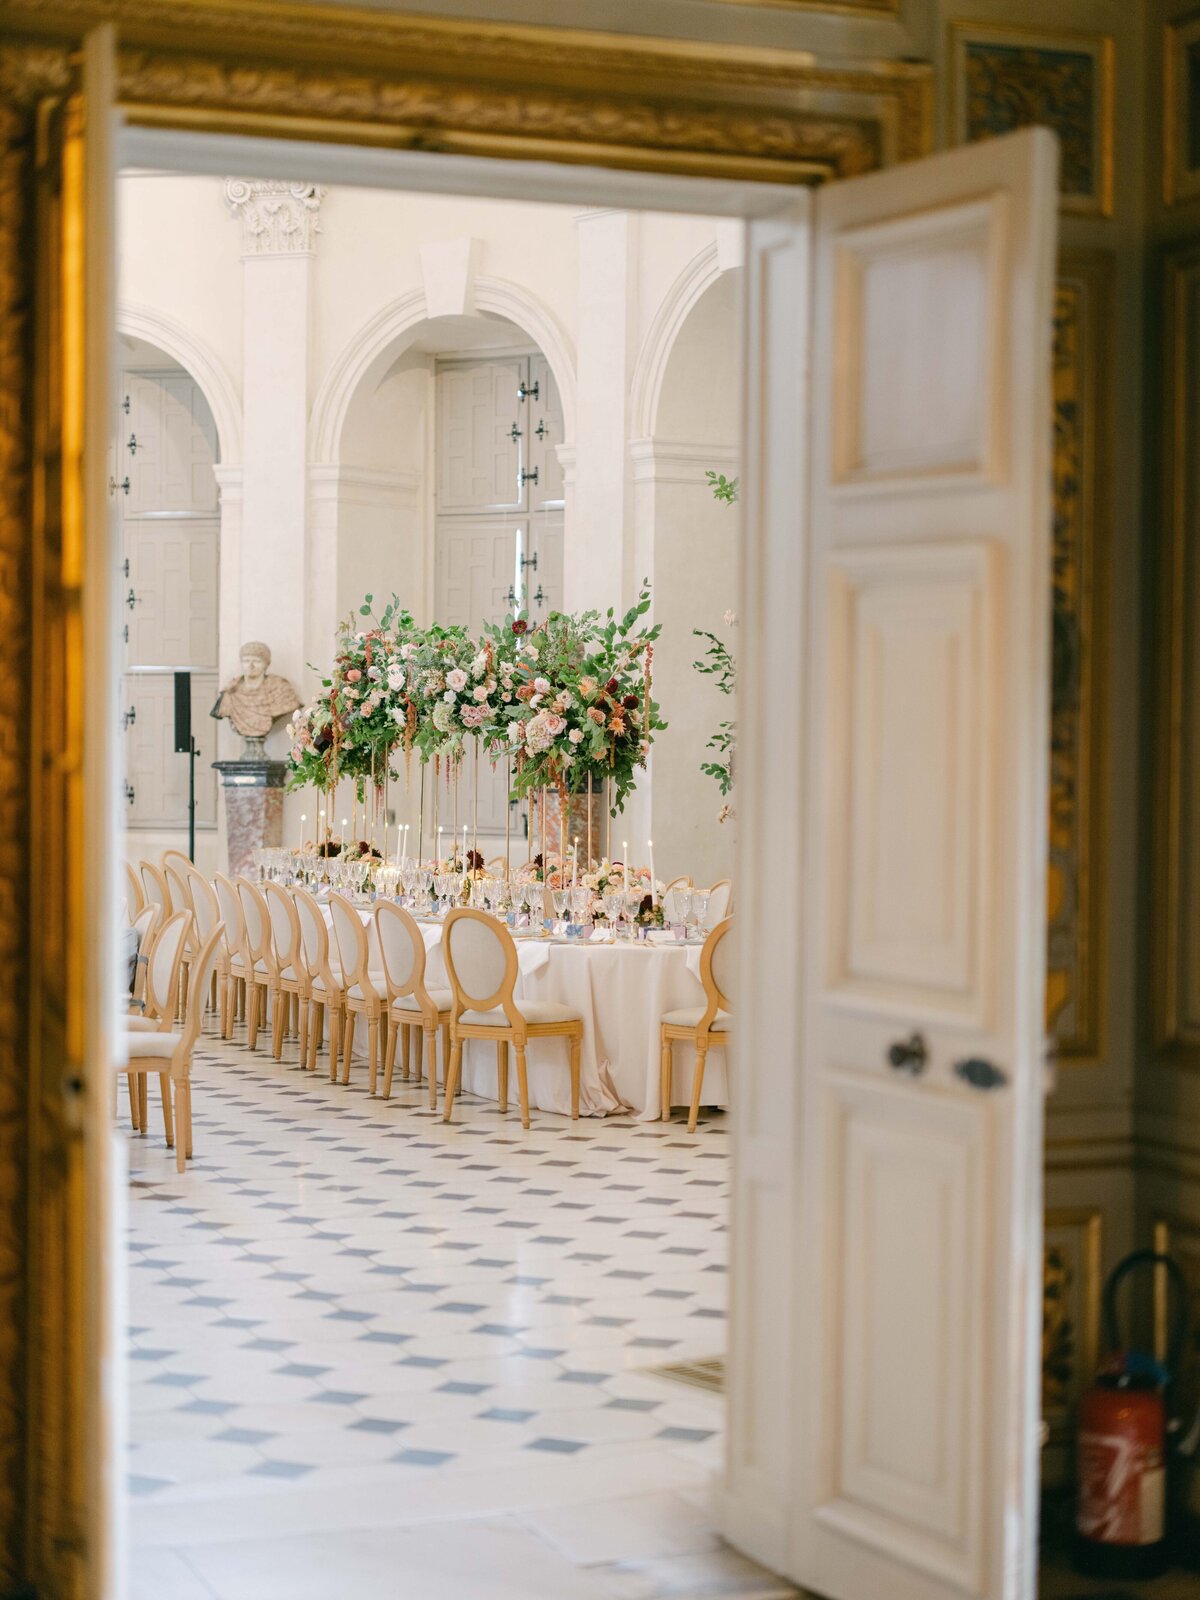 Chateau-Vaux-le-vicomte-wedding-florist-FLORAISON43